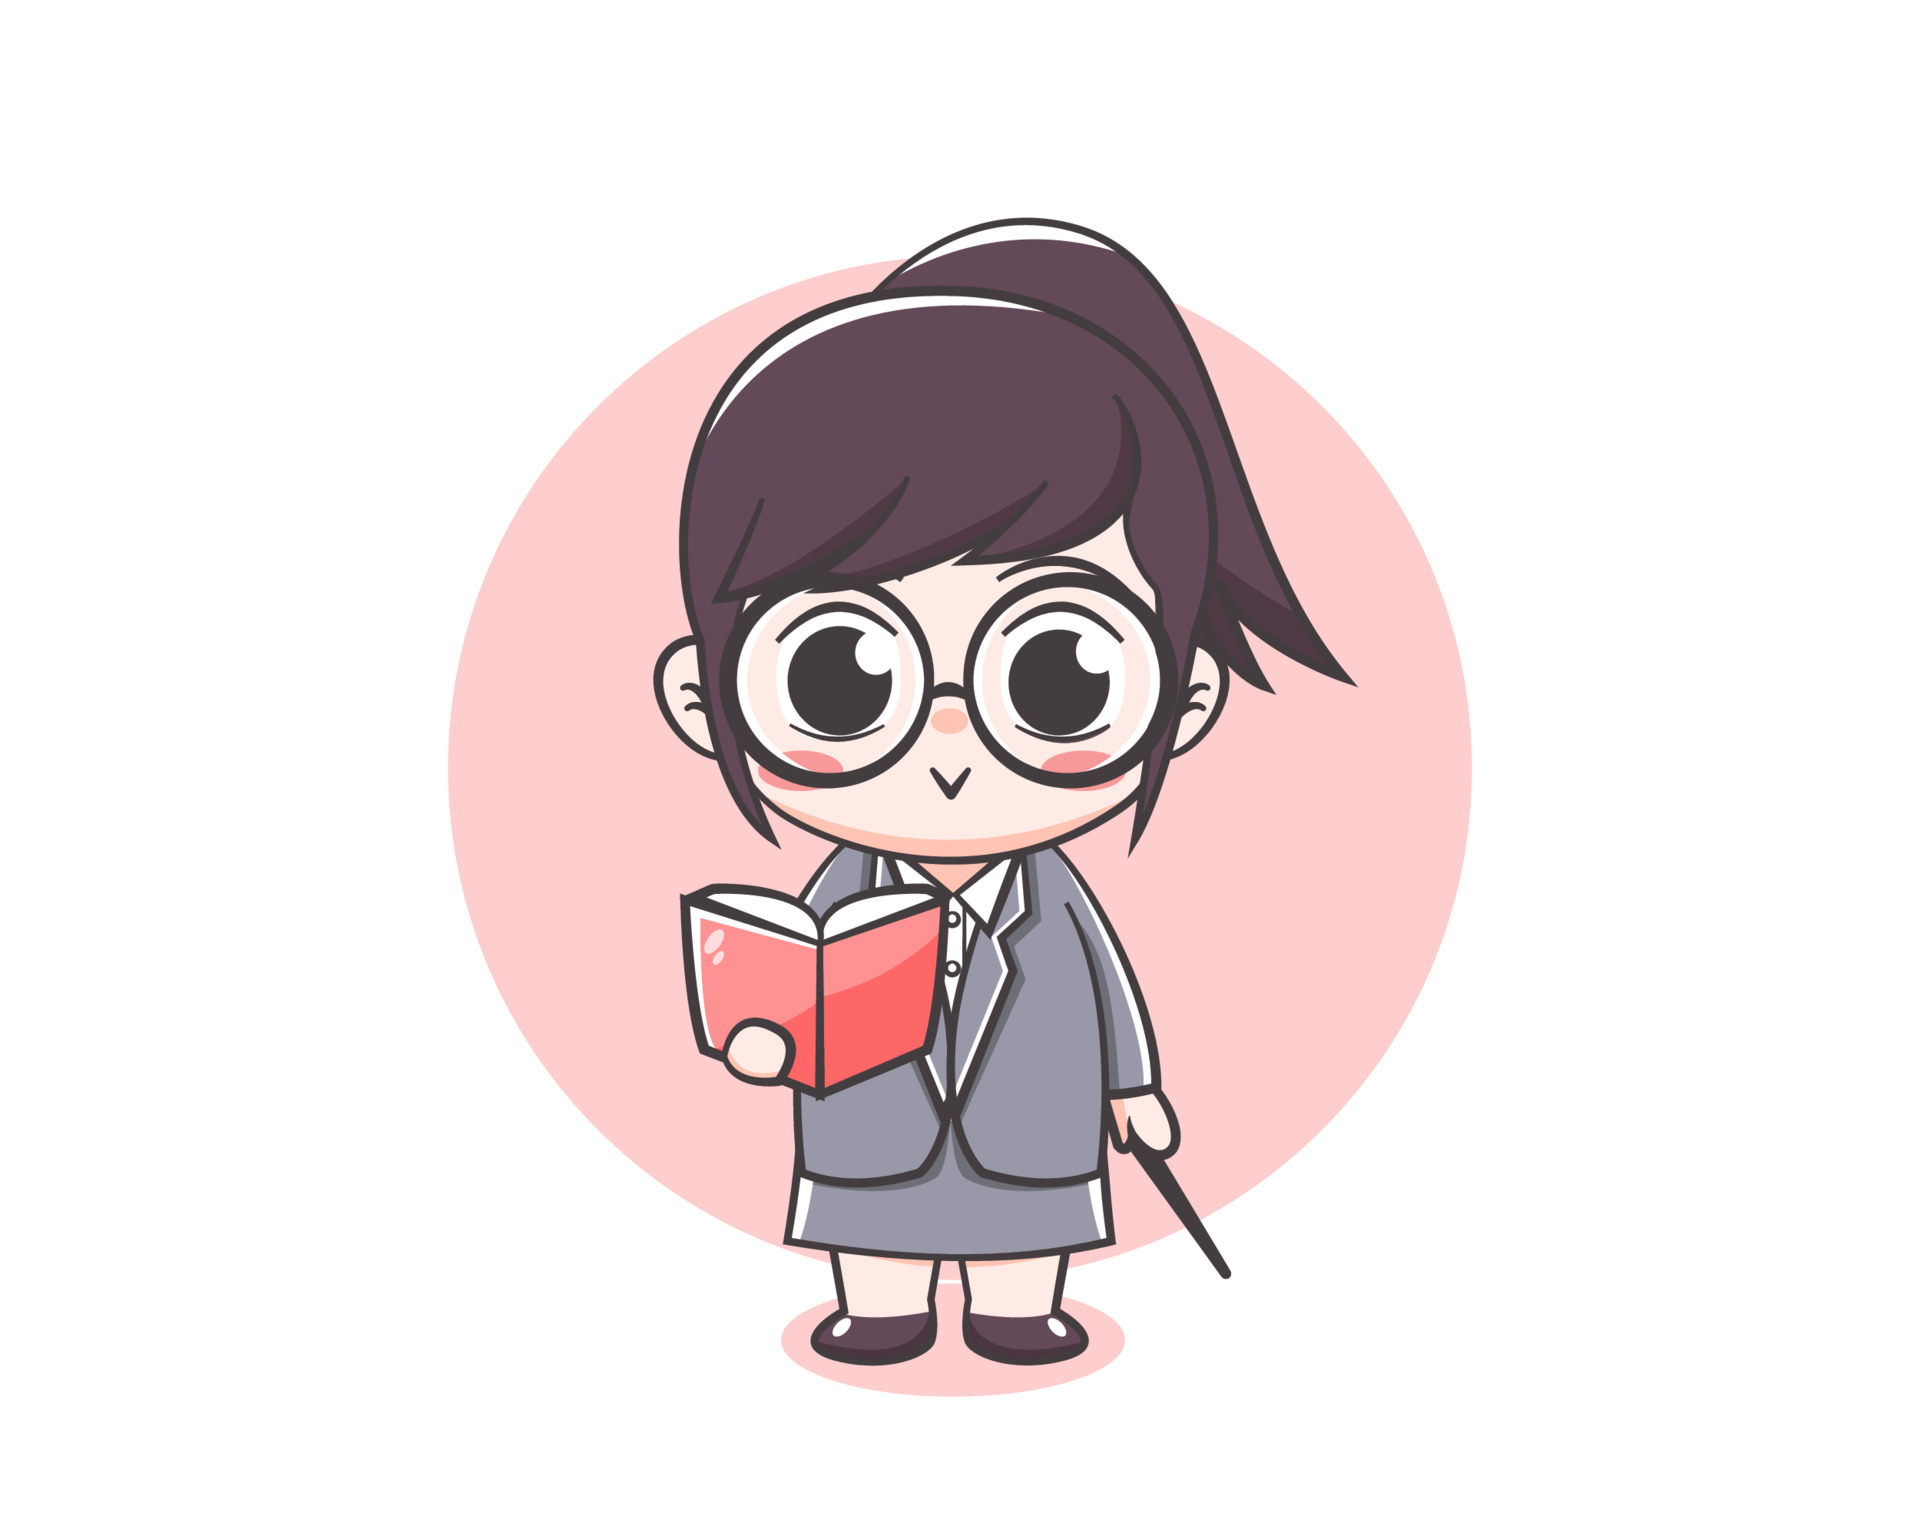 Cute teacher girl cartoon character 4235243 Vector Art at Vecteezy